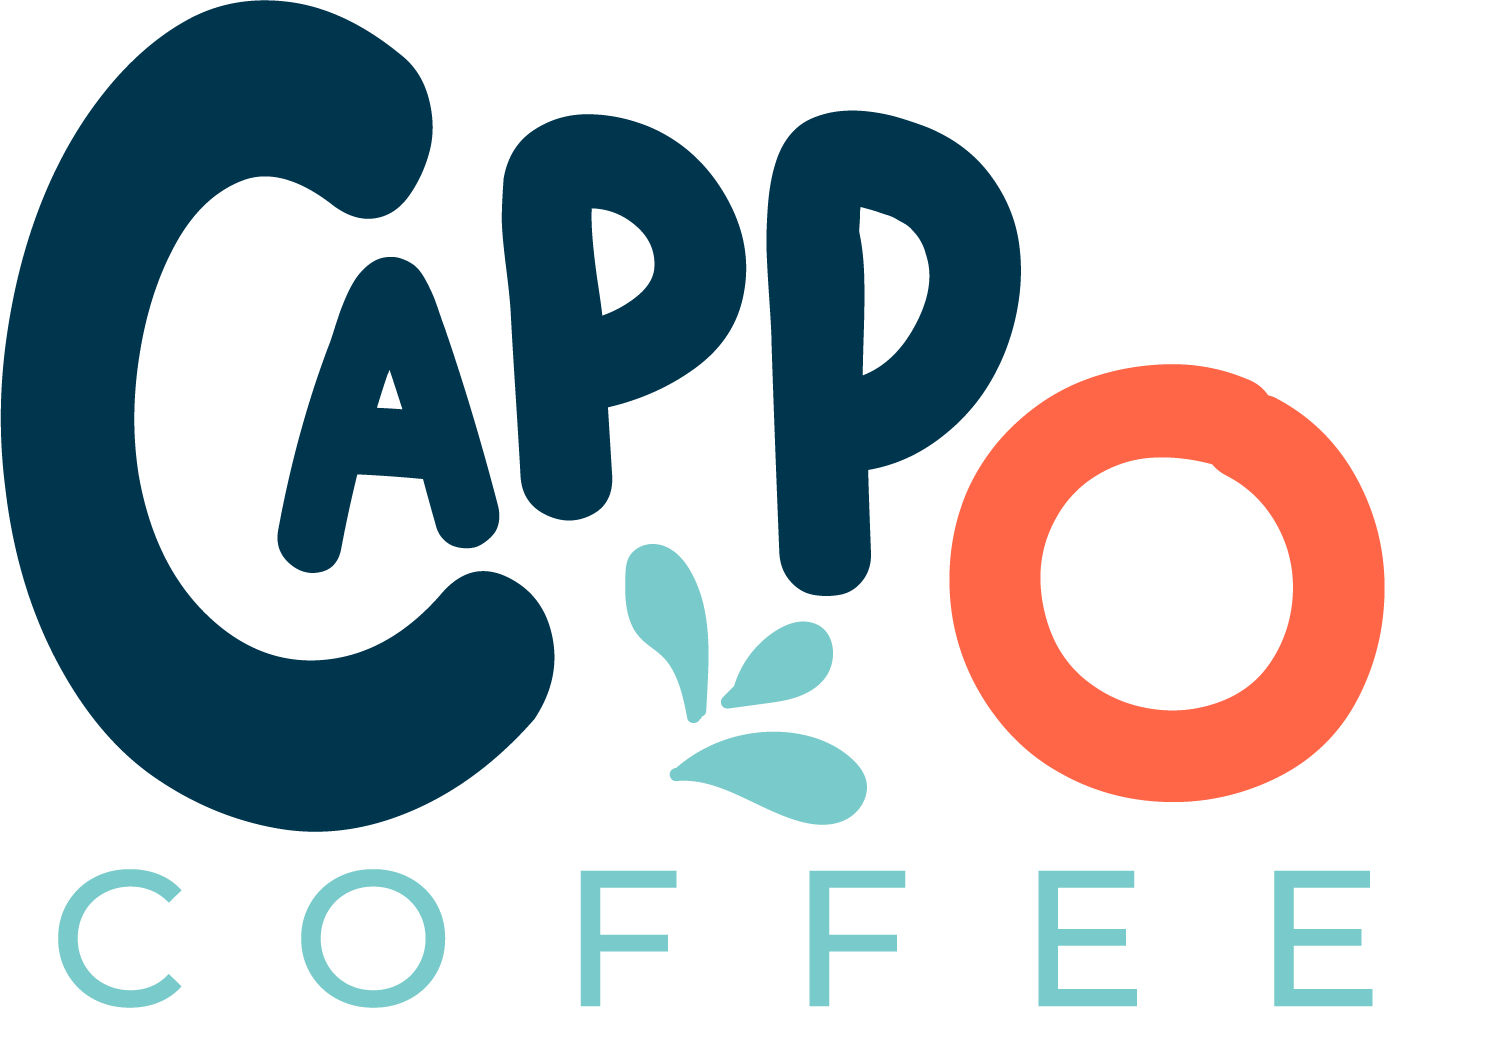 Cappo Coffee